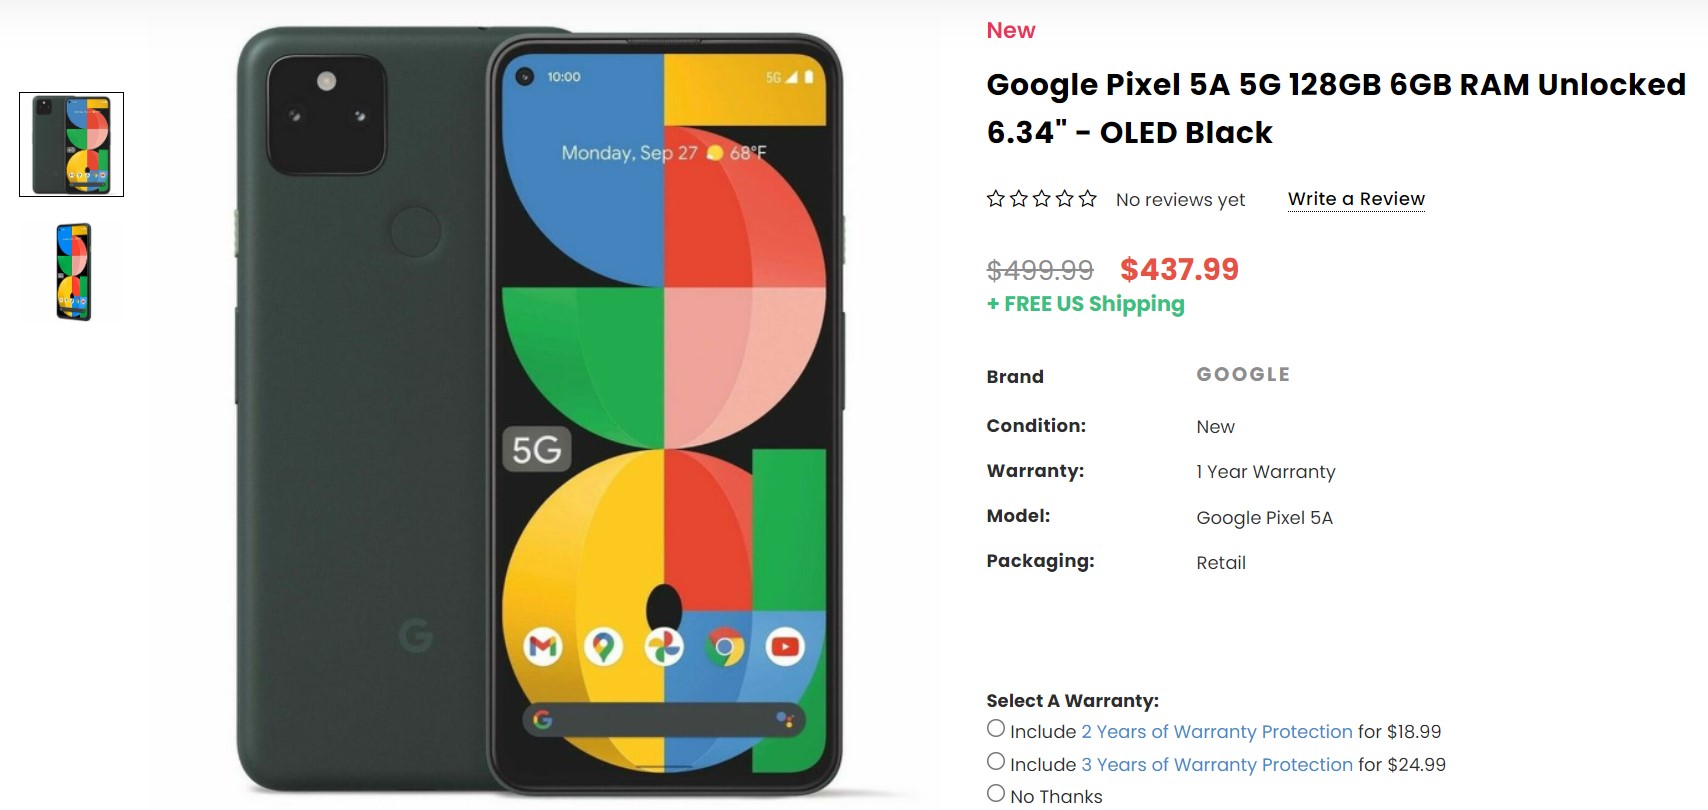 Google Pixel 5a Dailysteals Deal